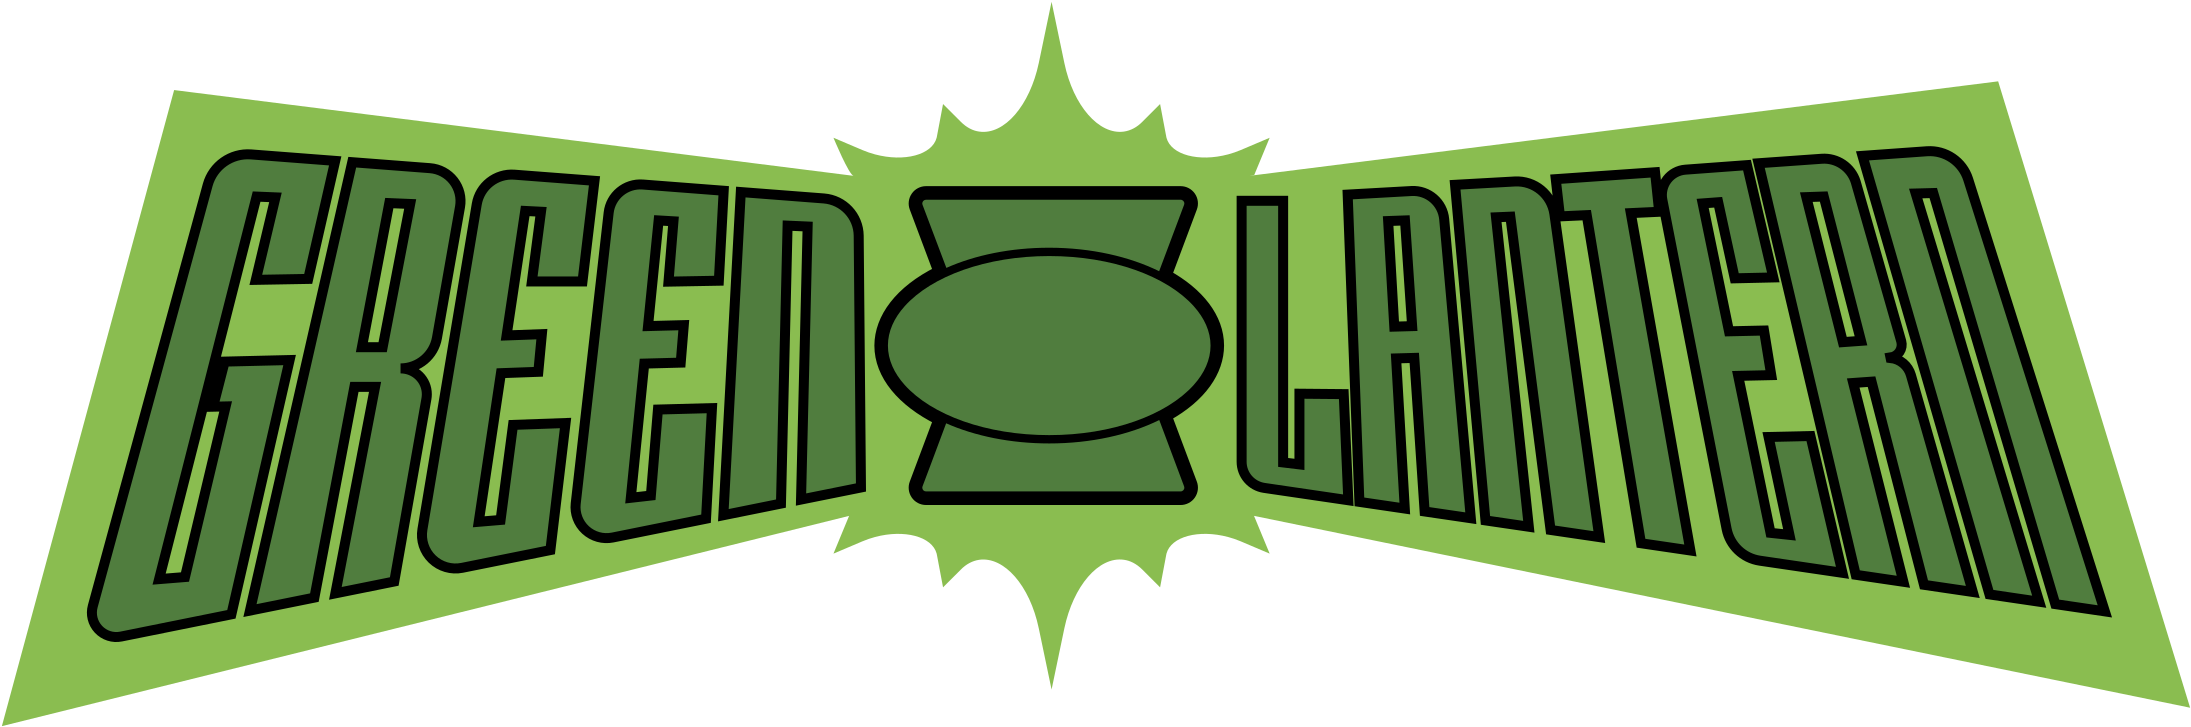 Green Lantern Background PNG Image